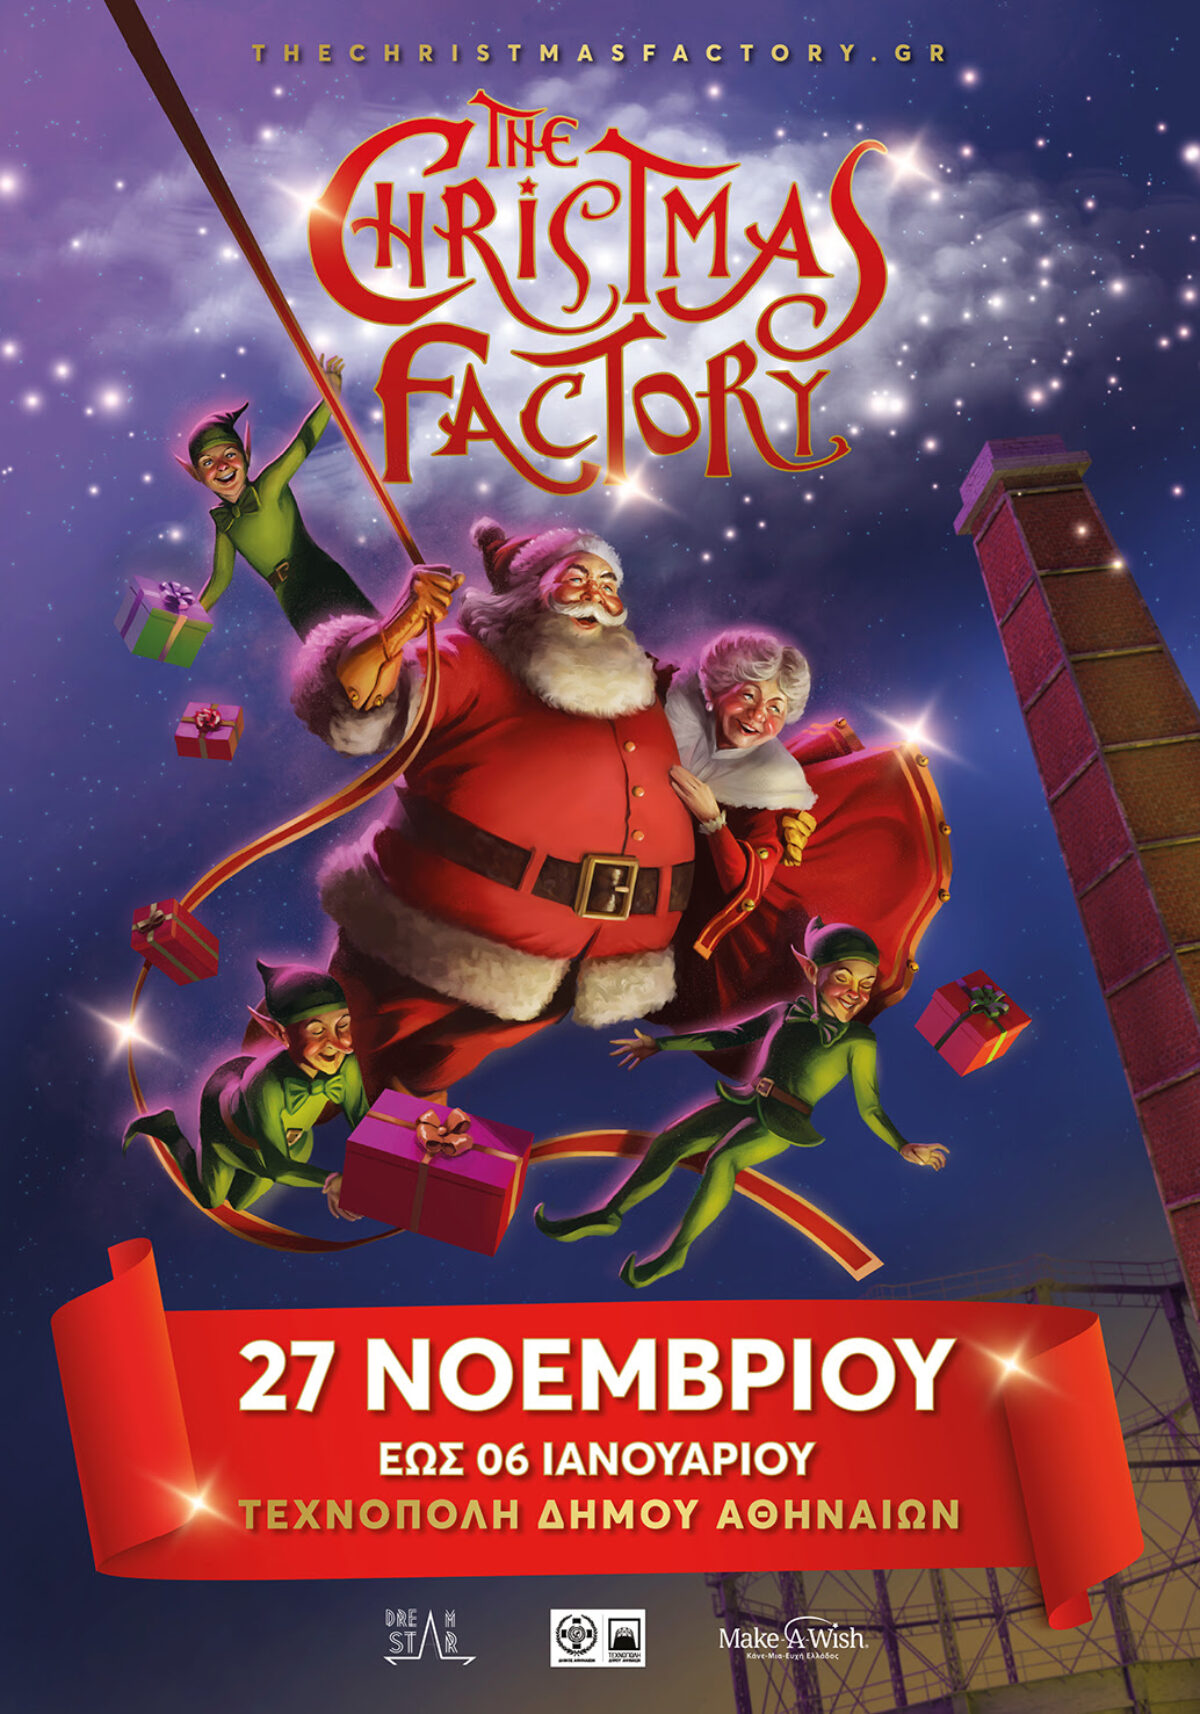 The Christmas Factory Η επιστροφή | Το μεγαλύτερο χριστουγεννιάτικο πάρκο παραμένει στην Τεχνόπολη Δ.Α. με πολλές εκδηλώσεις από 24/12 ως τις 6/1